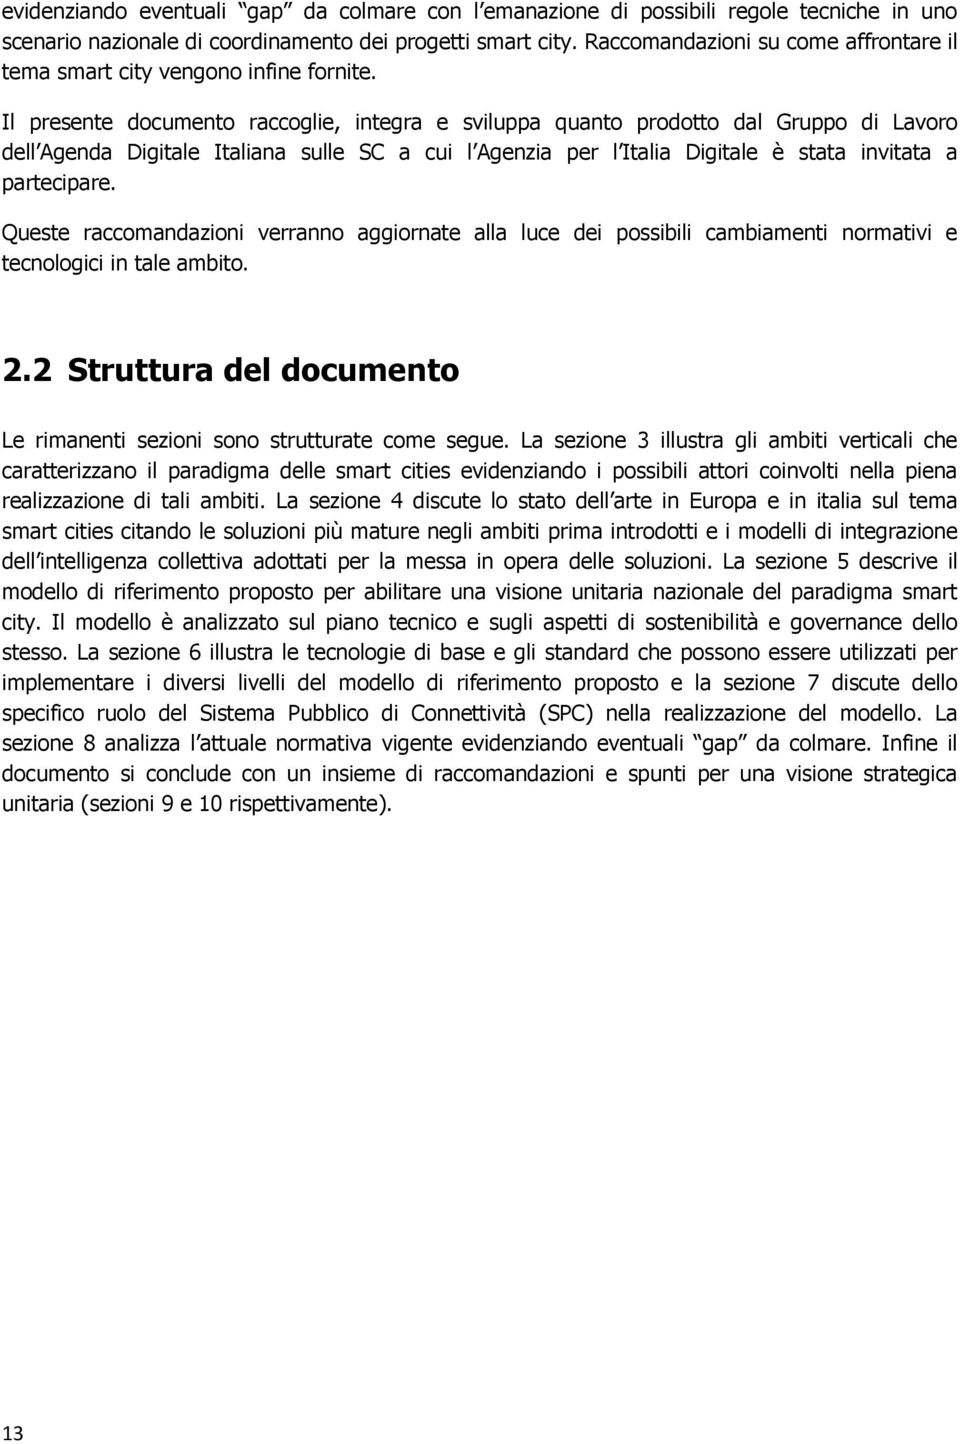 Il presente documento raccoglie, integra e sviluppa quanto prodotto dal Gruppo di Lavoro dell Agenda Digitale Italiana sulle SC a cui l Agenzia per l Italia Digitale è stata invitata a partecipare.